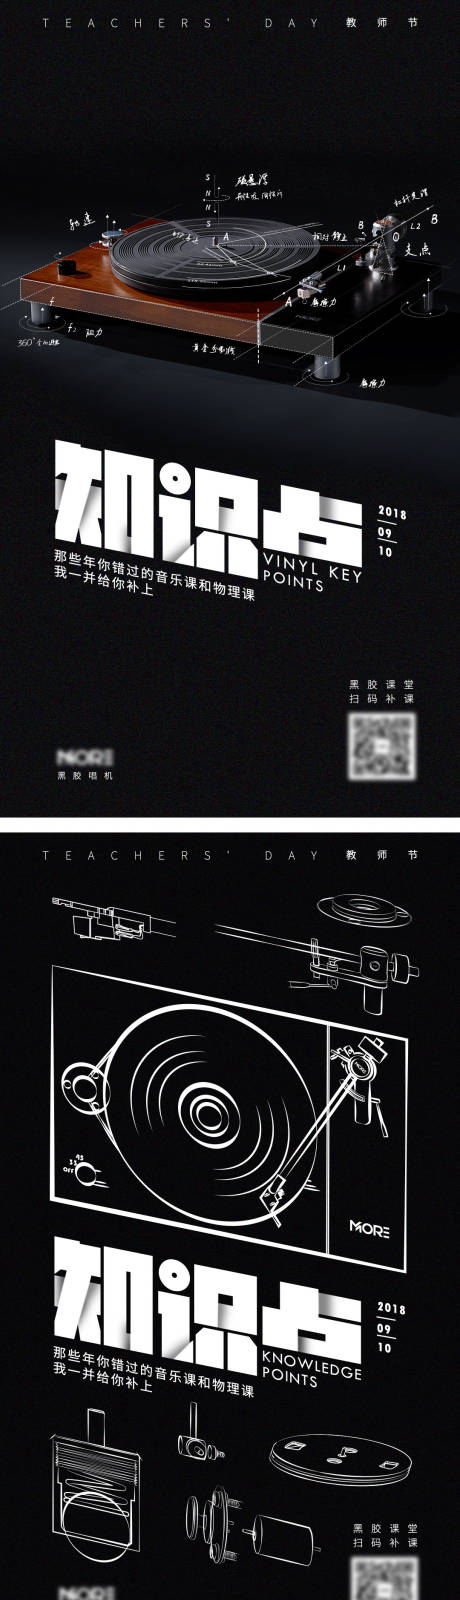 品牌教师节节日海报